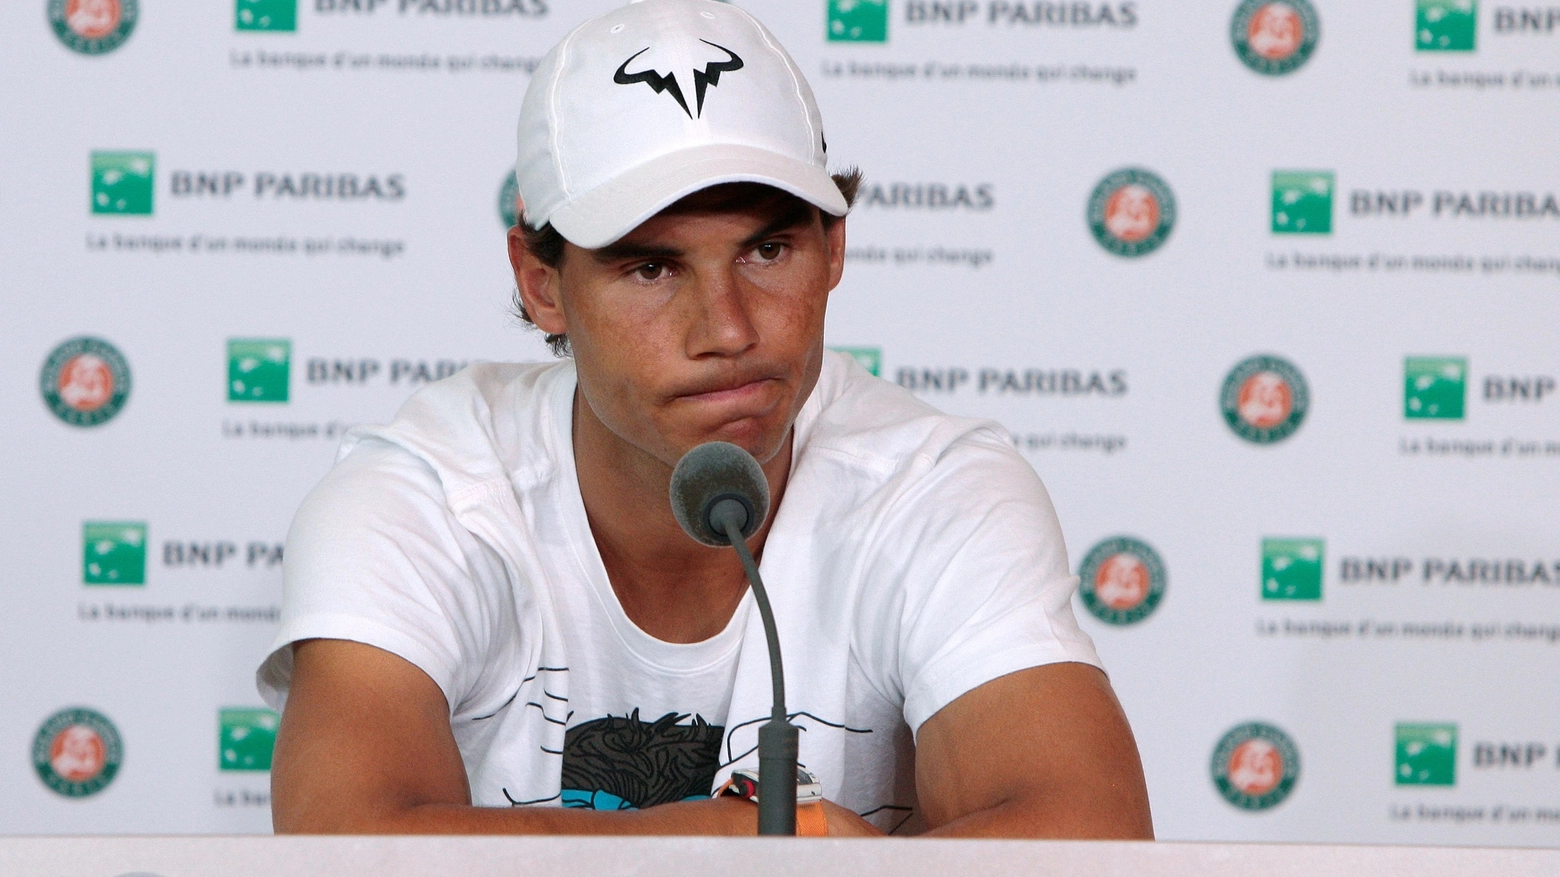 Rafa Nadal costretto al forfait al Roland Garros (AFP)